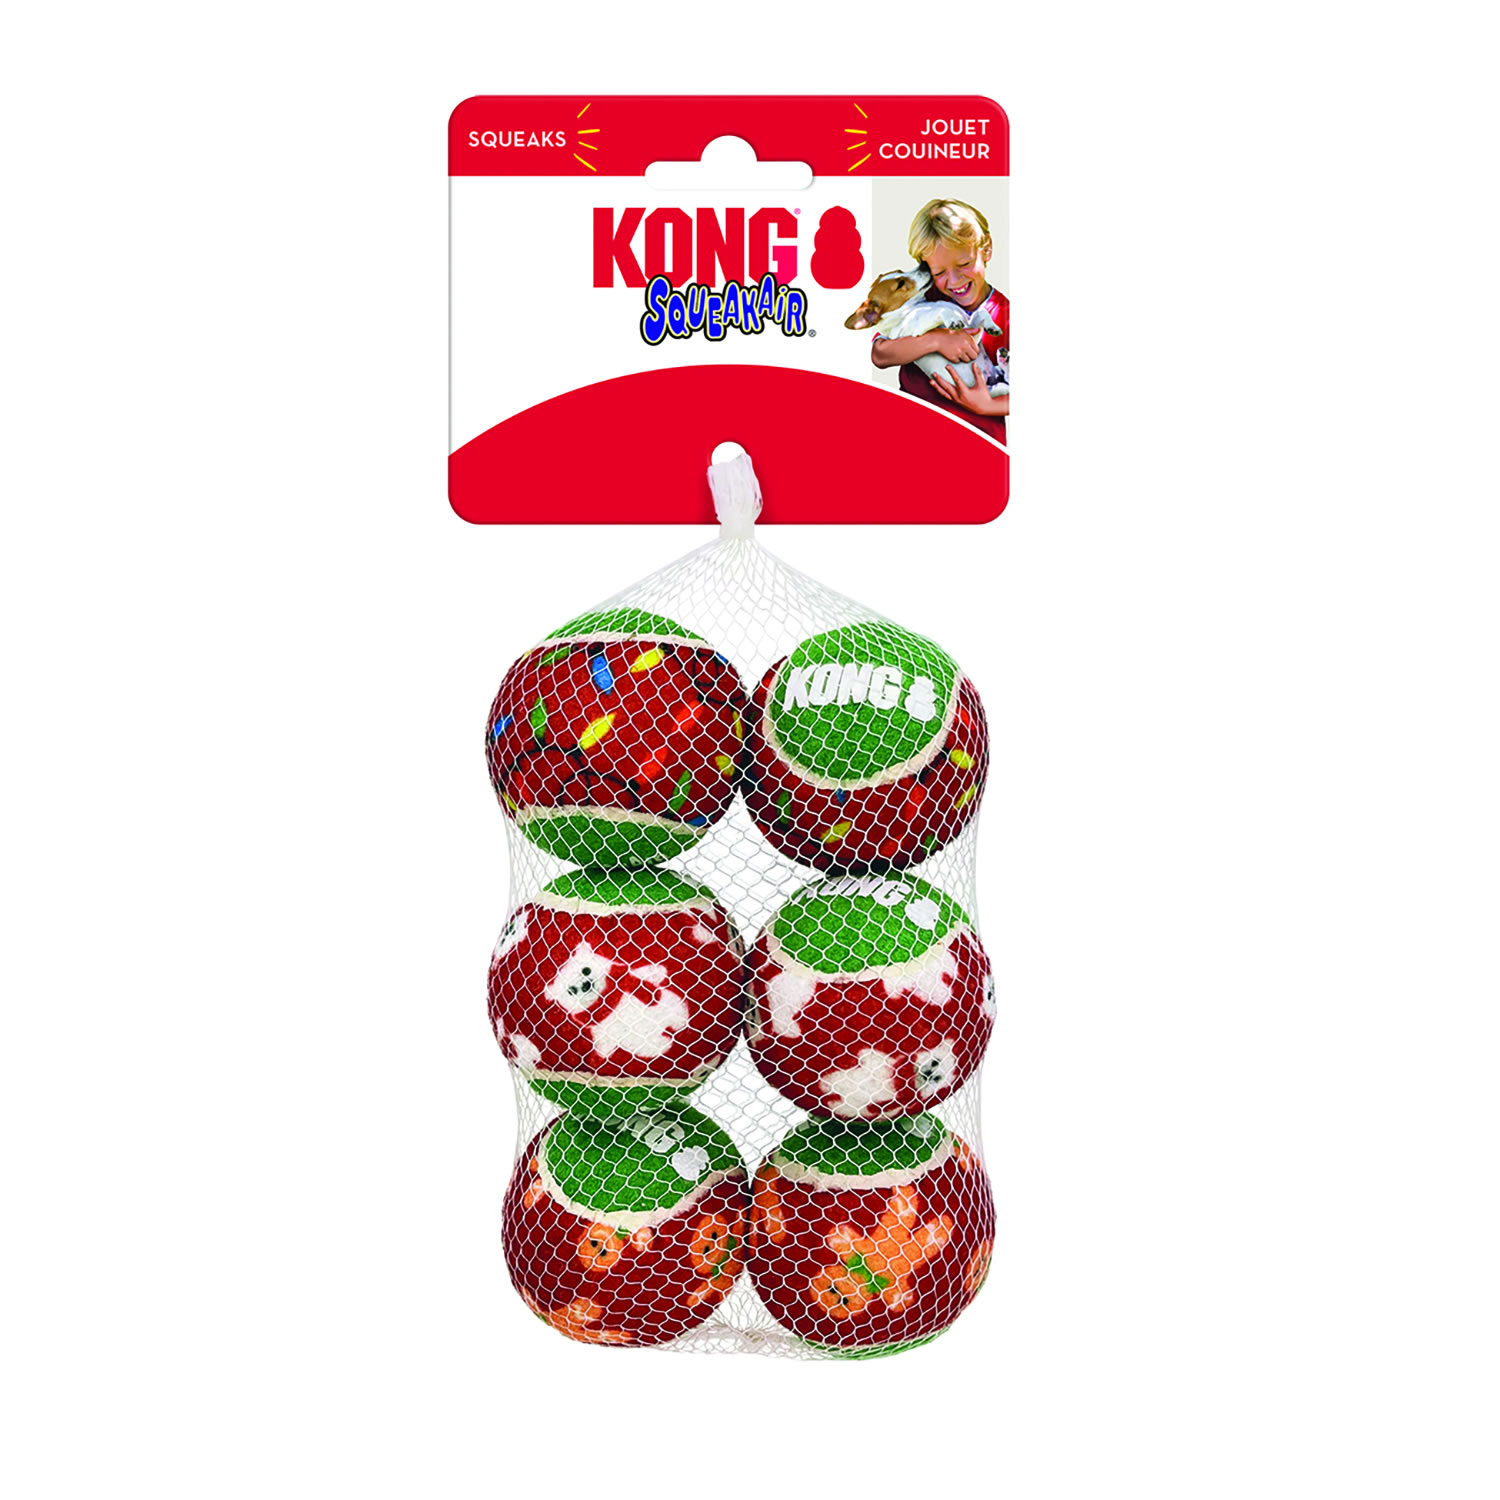 KONG Holiday SqueakAir Balls - Small x 6 Pack